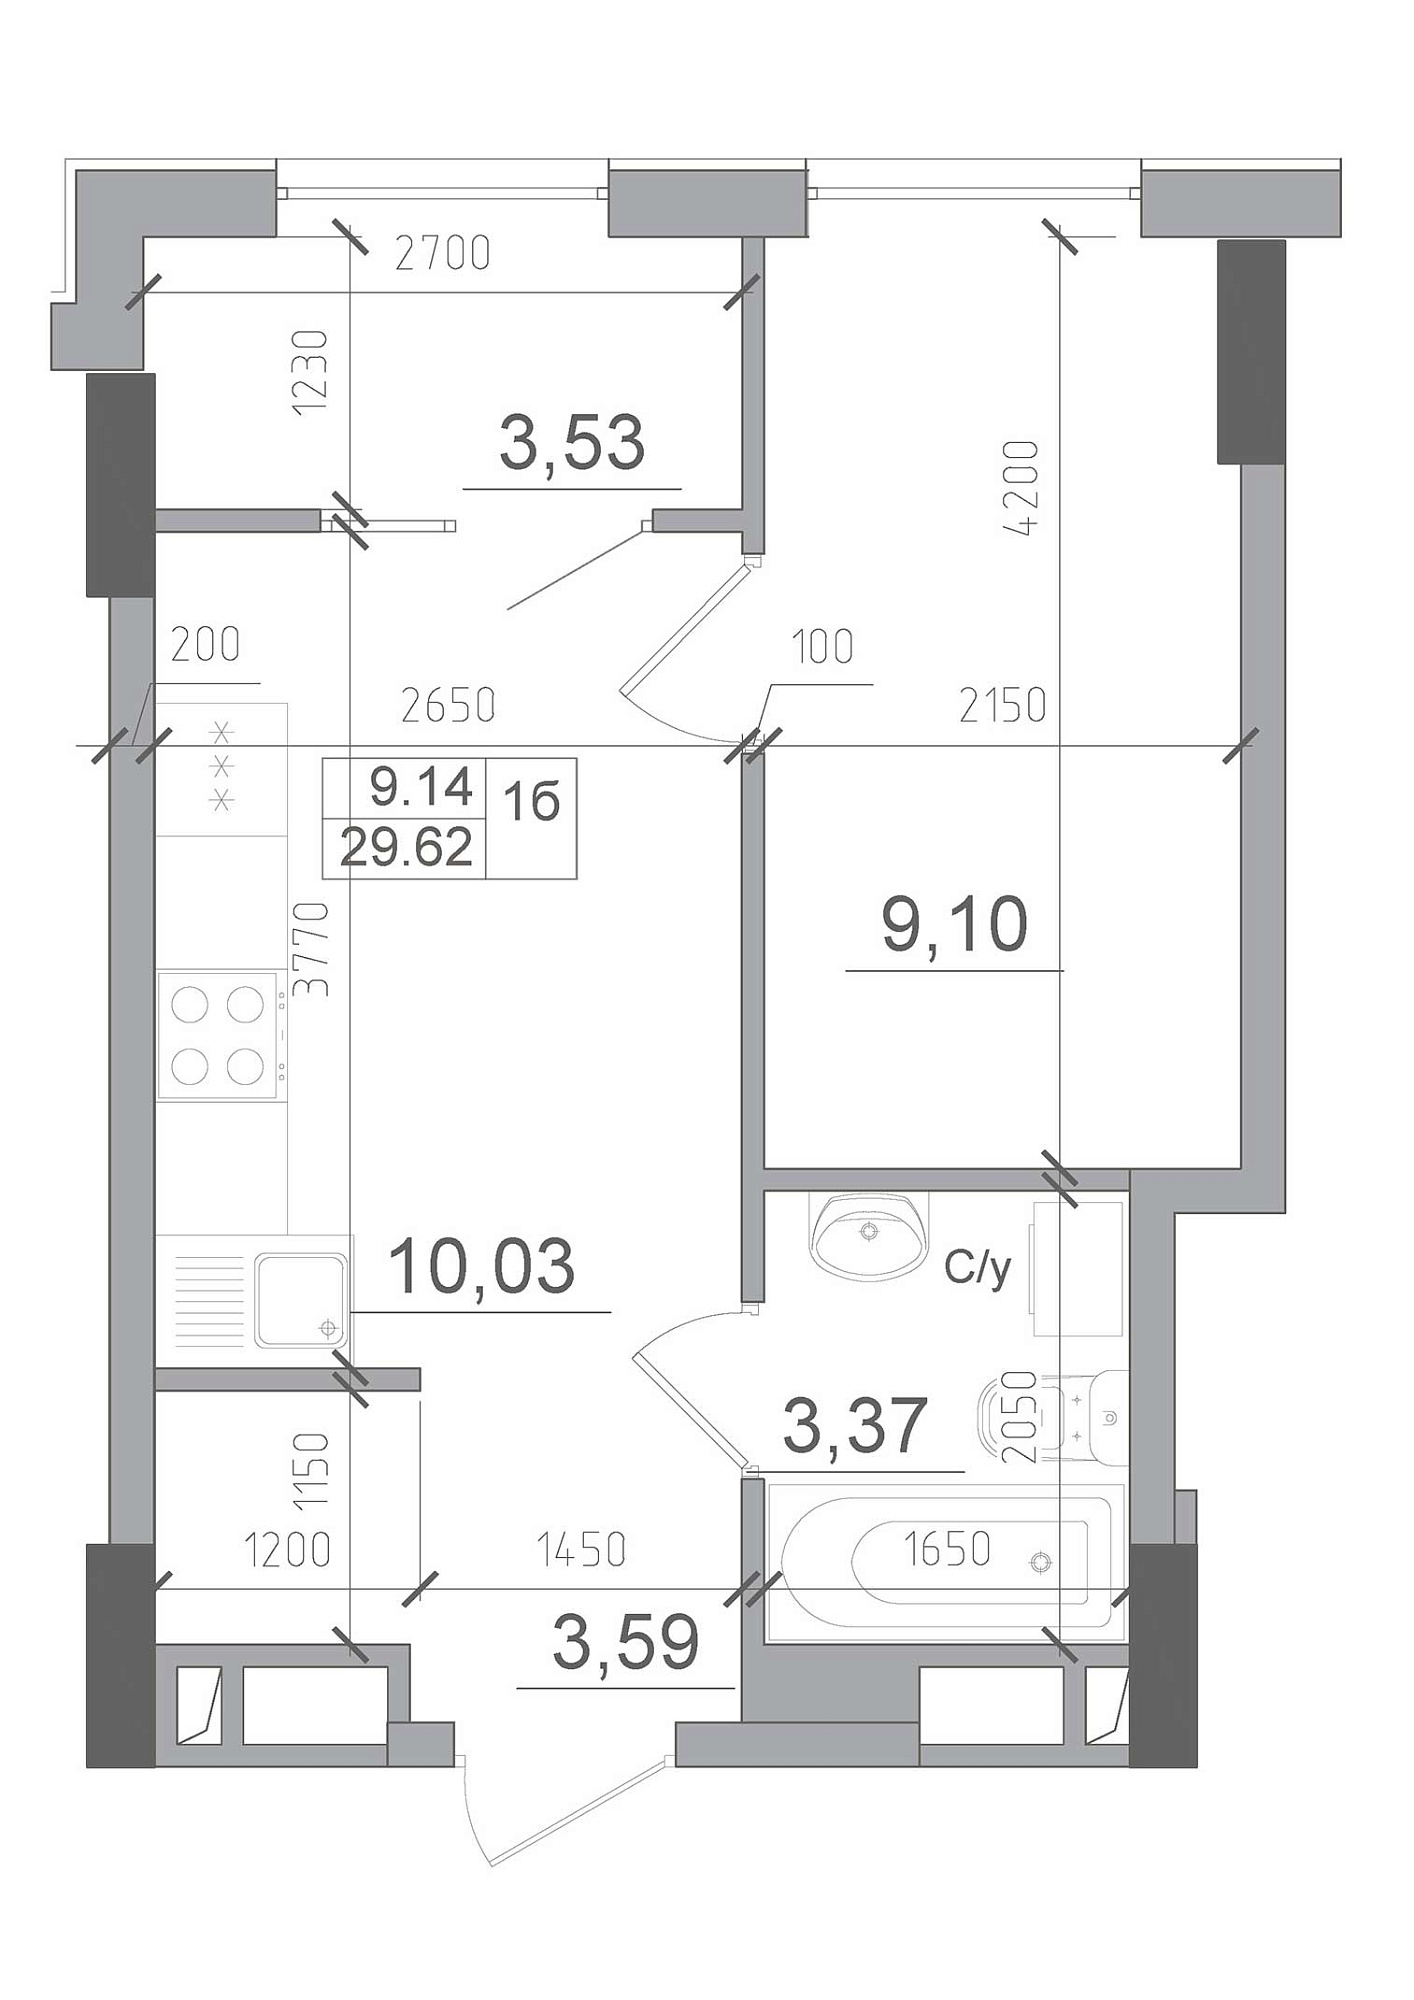 Планування 1-к квартира площею 29.62м2, AB-22-07/00002.